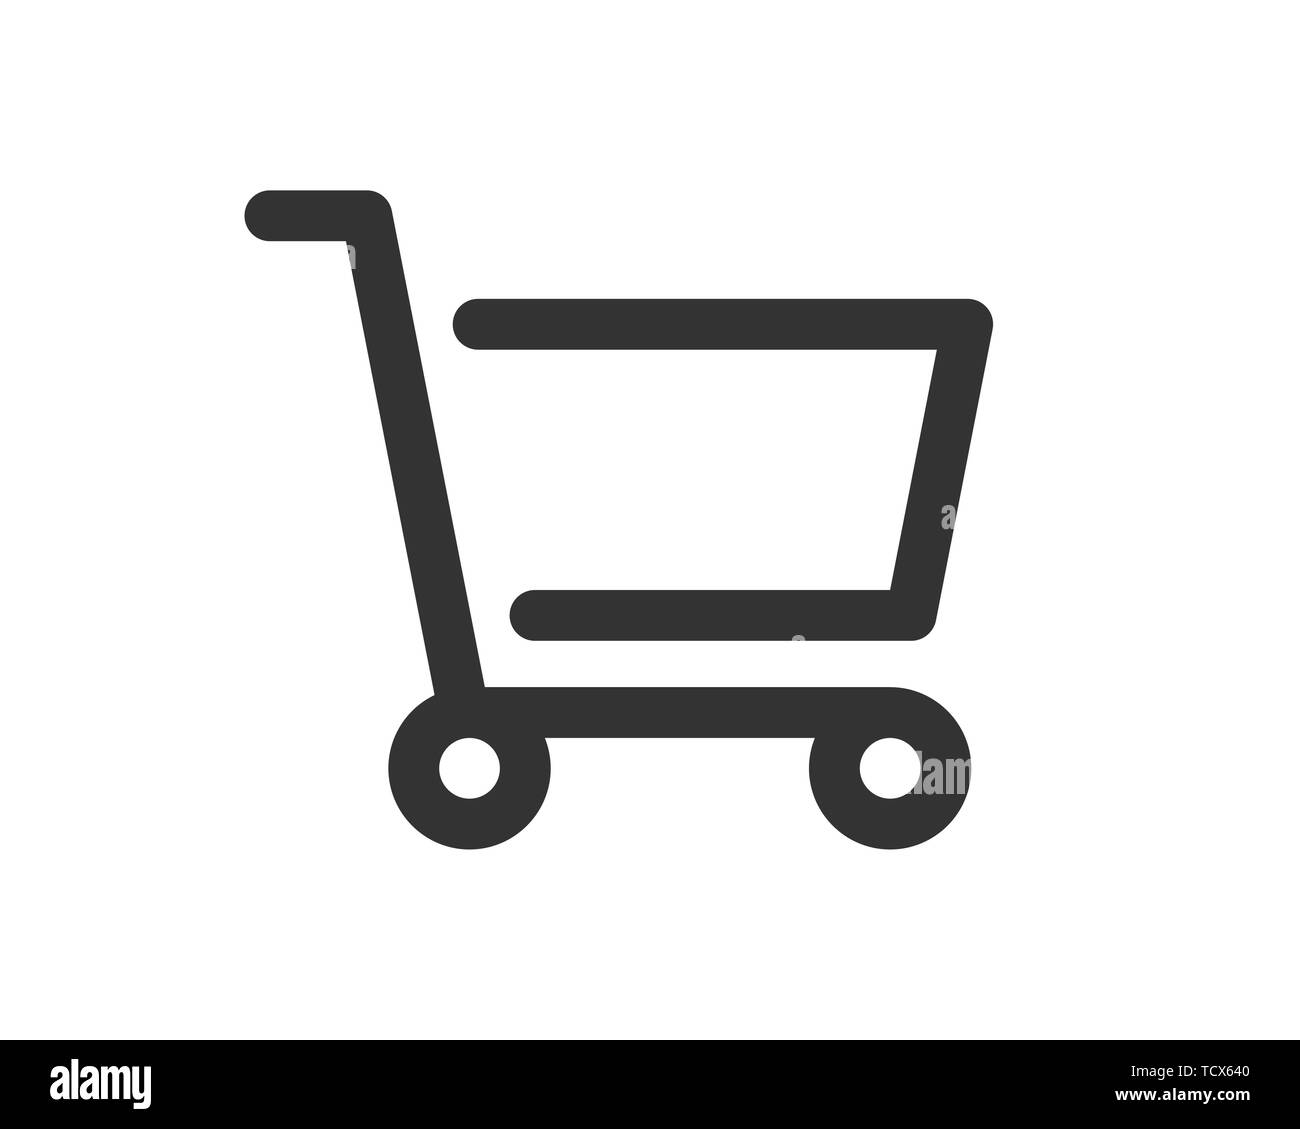 shopping cart icon vector Stock Vector Image & Art - Alamy